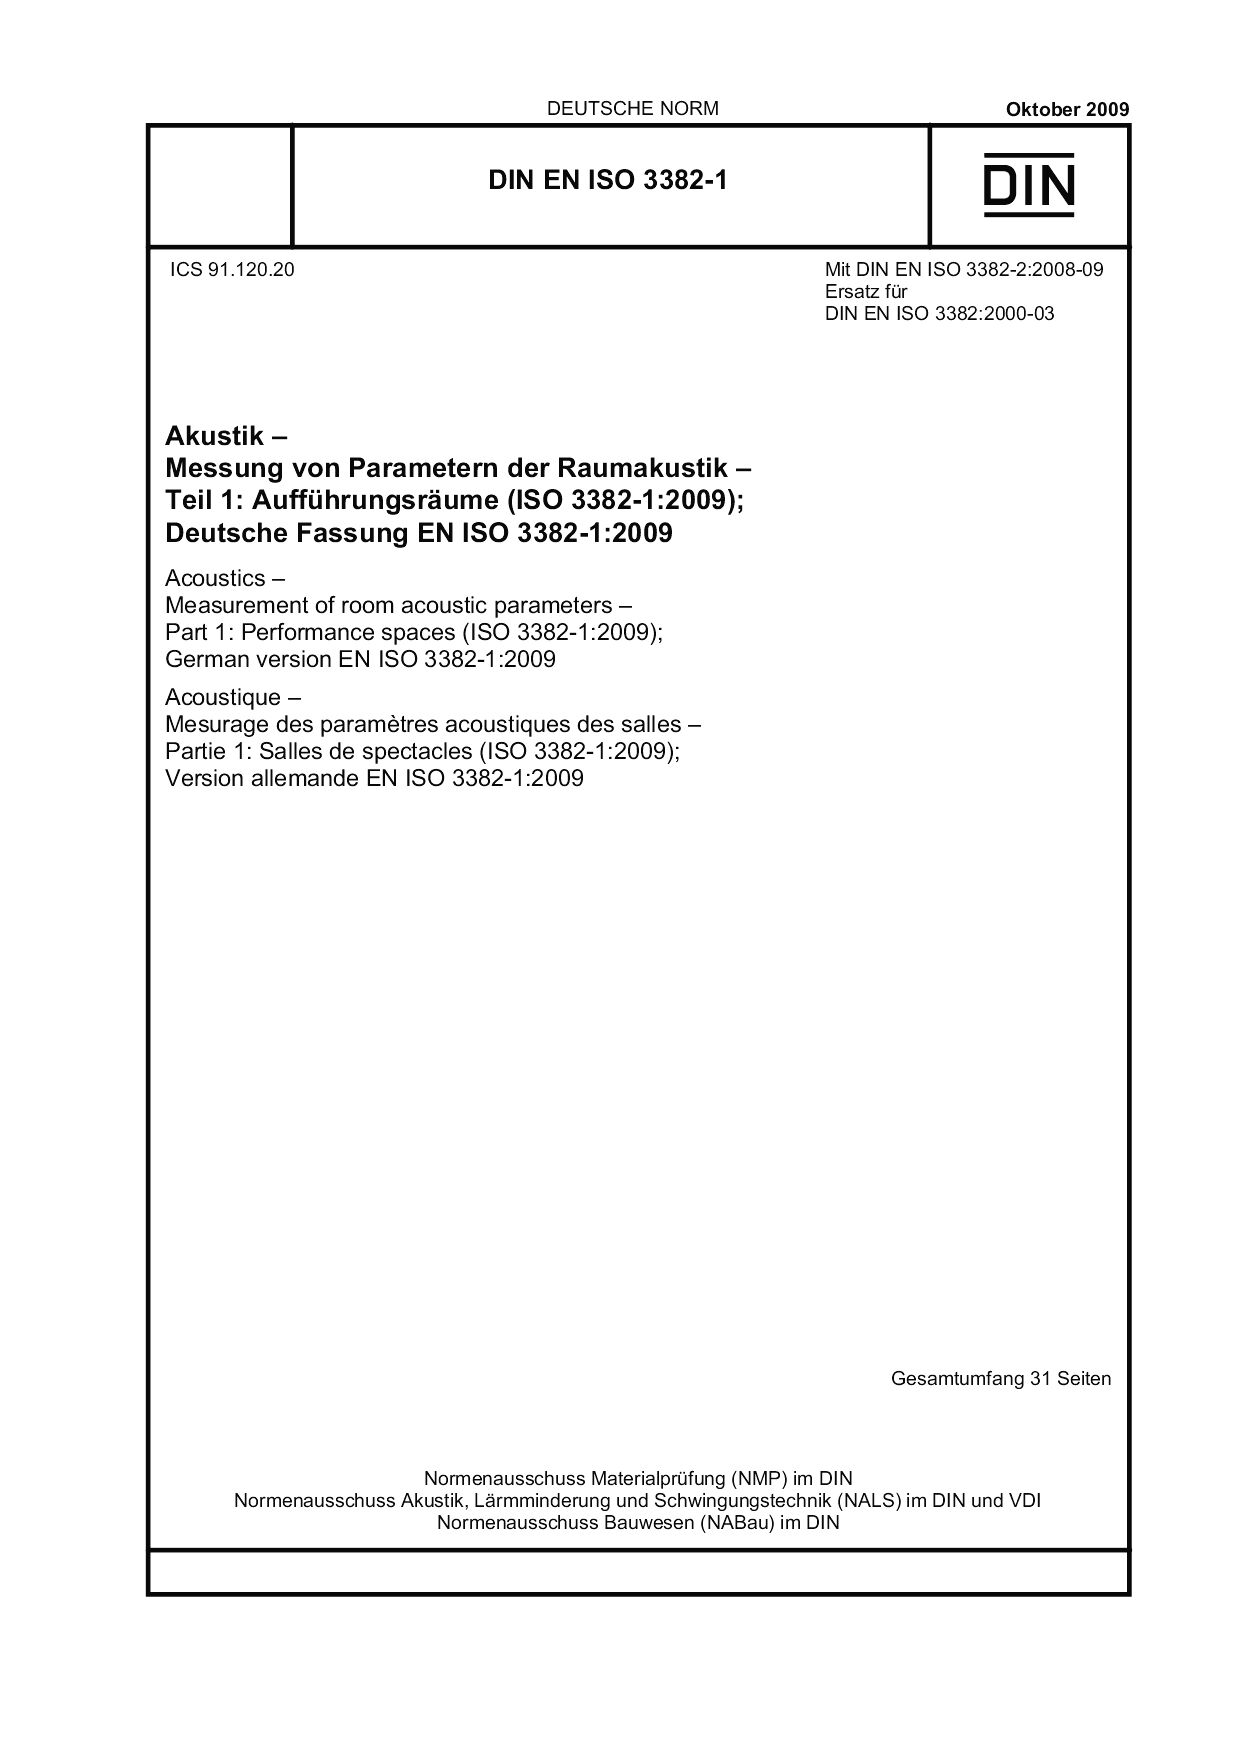 DIN EN ISO 3382-1:2009封面图